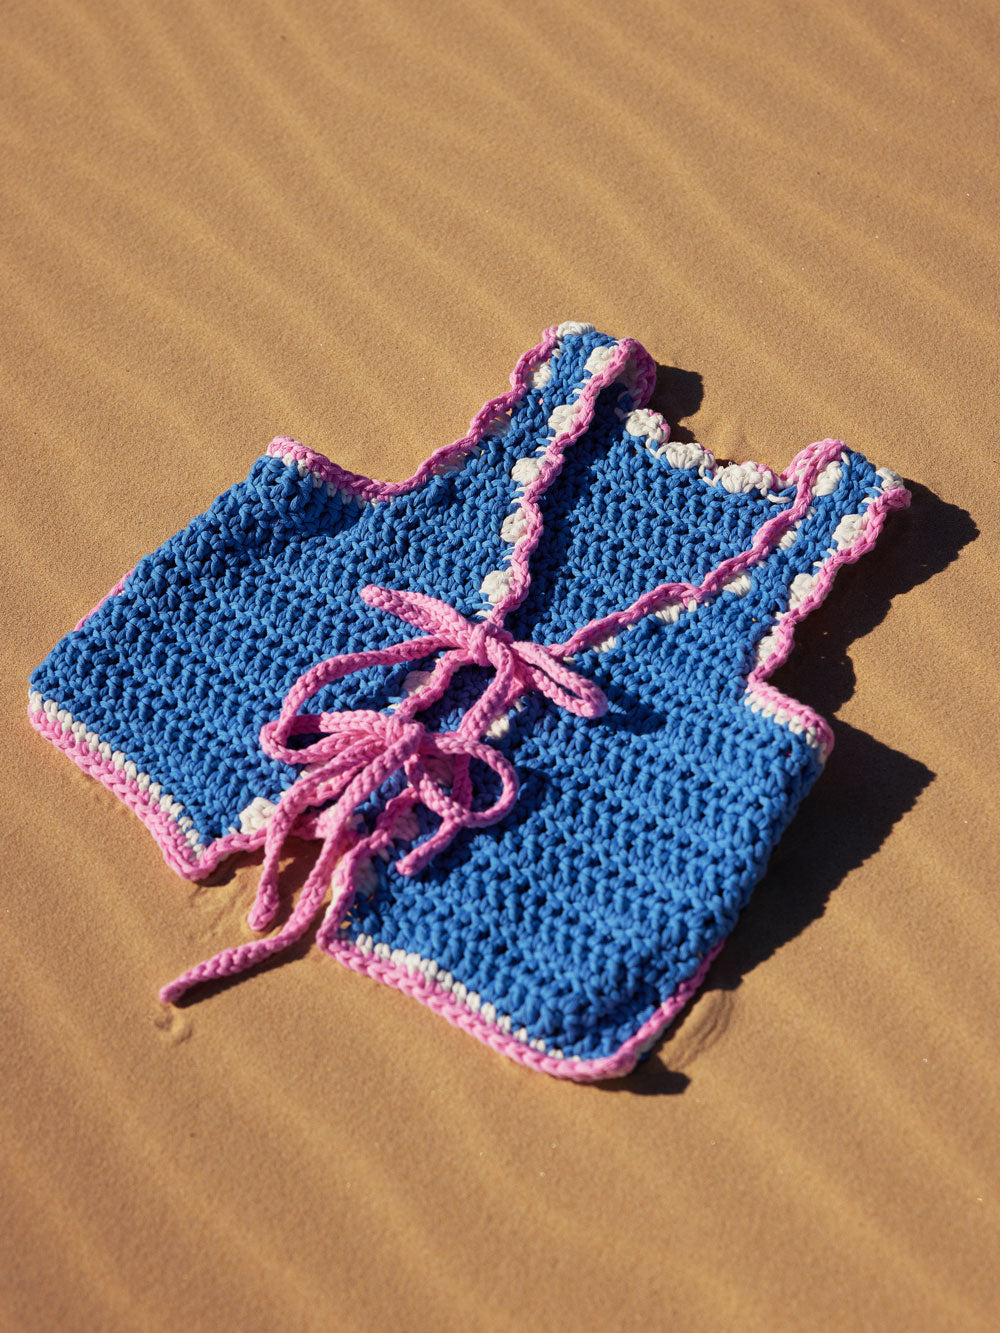 Knit a Classic V-Neck Vest // Step-by-Step DIY, Knitting Pattern